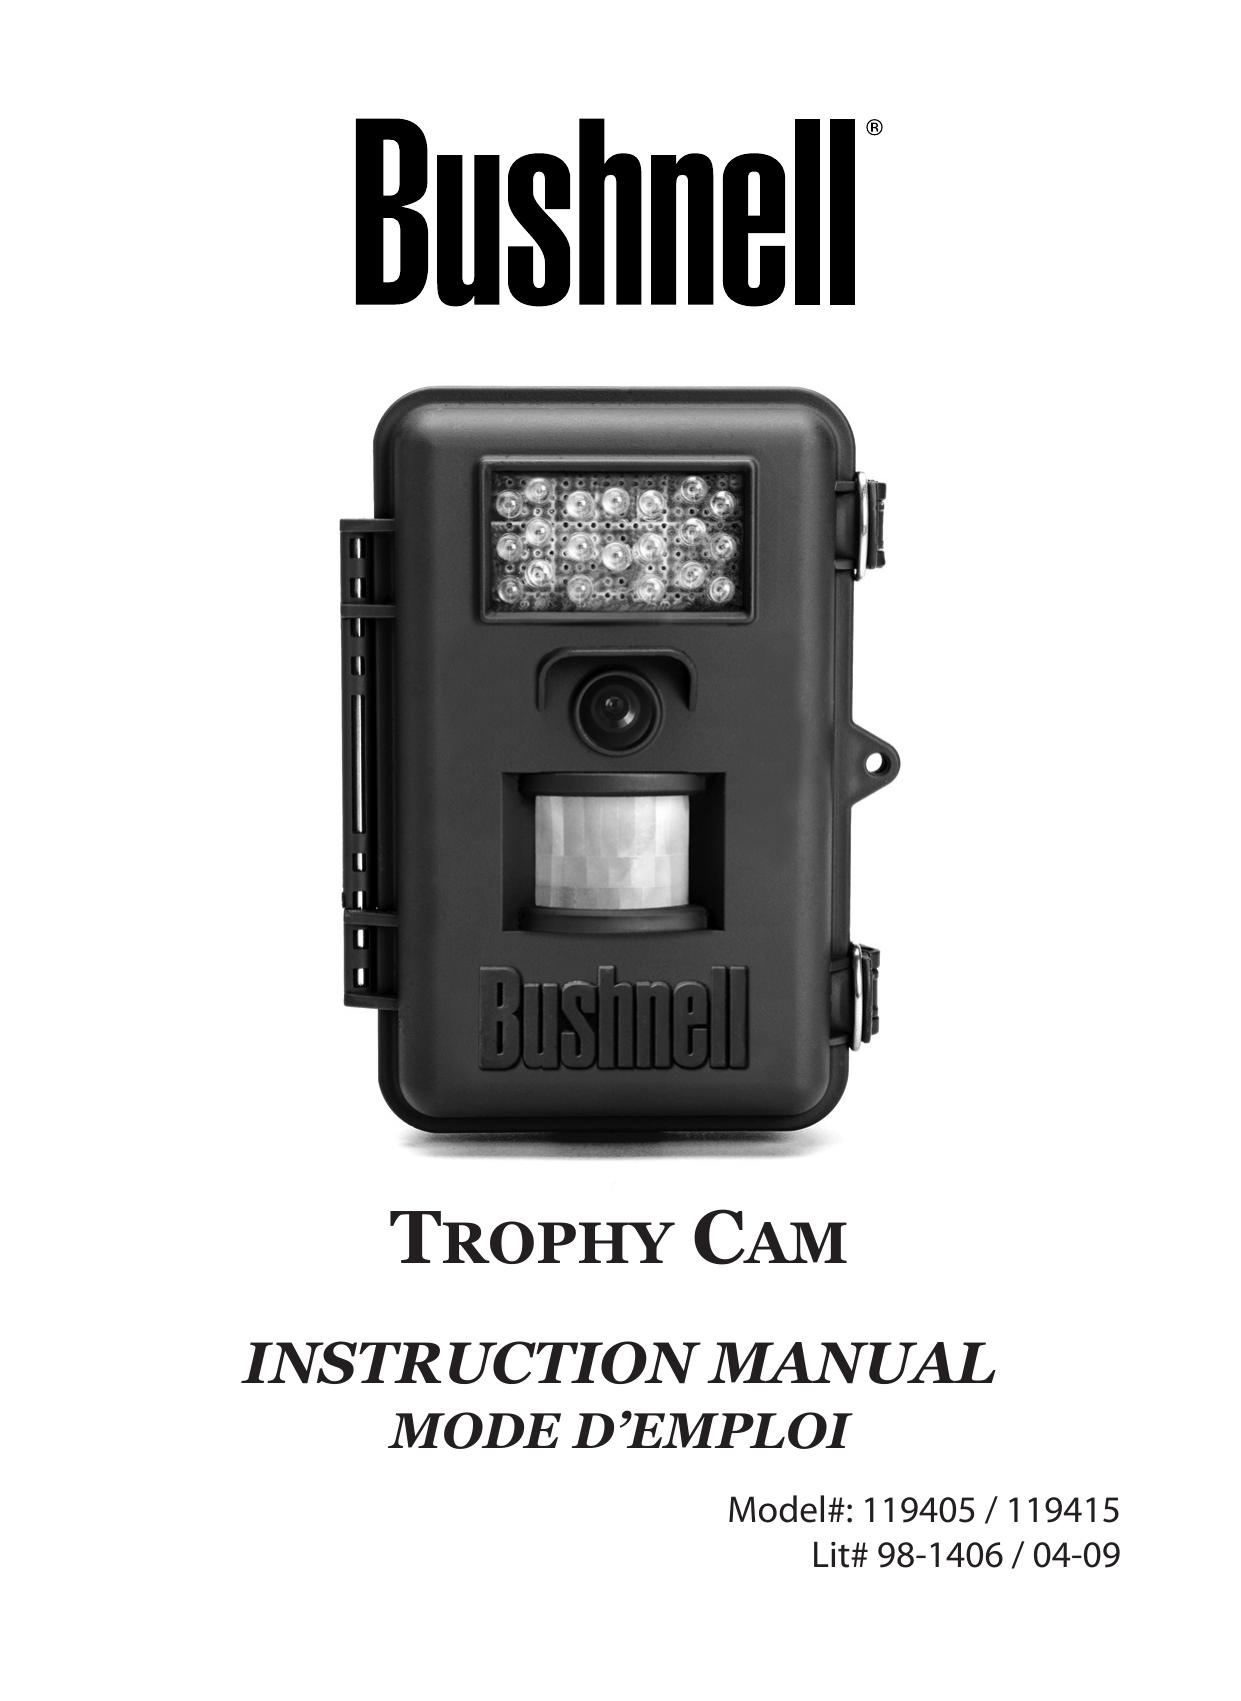 Bushnell 119405 Digital Camera User Manual